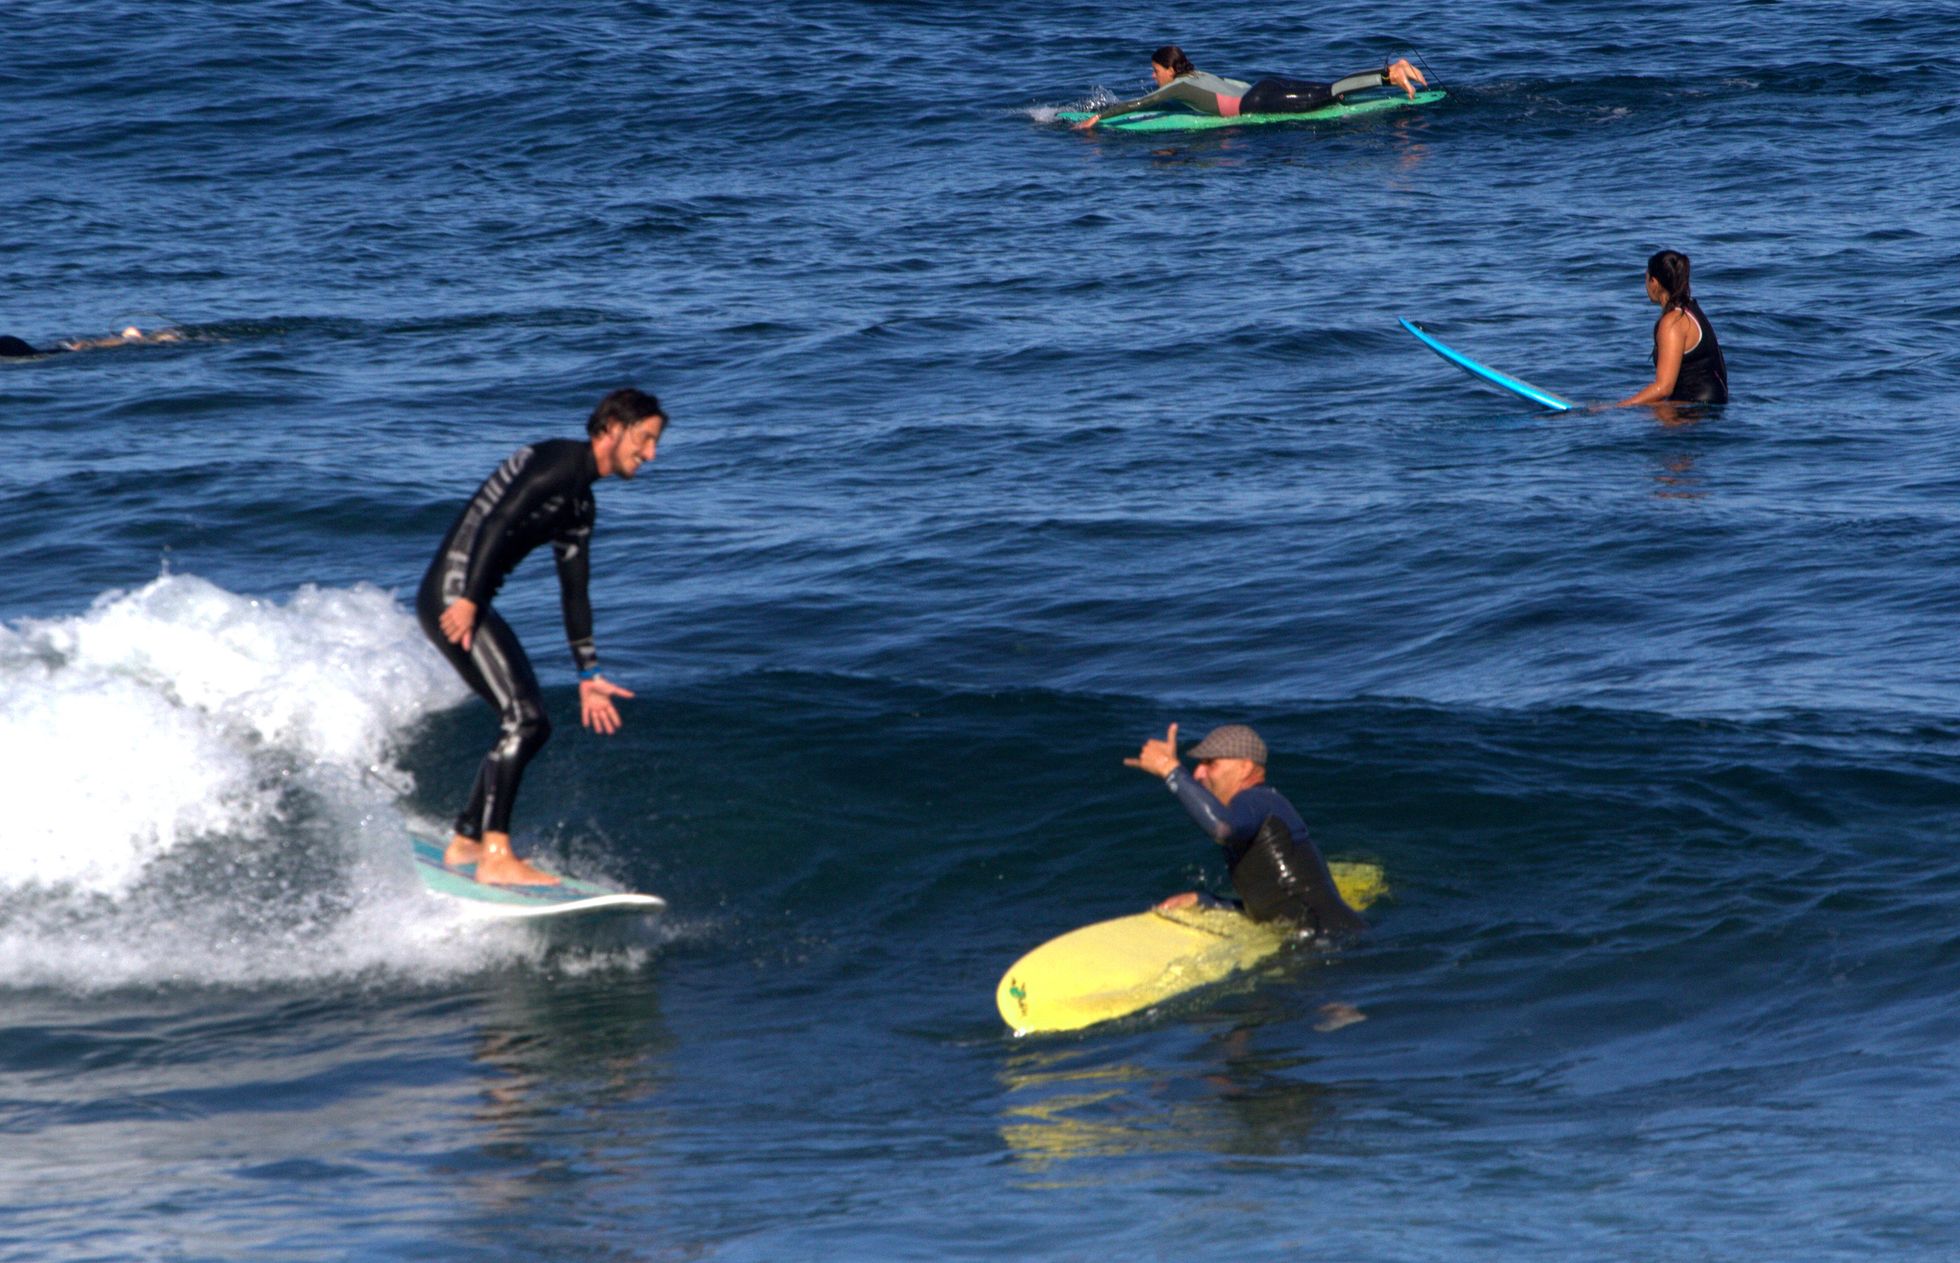 Хотя пляжи закрыты, испанцы теперь могут заниматься водными видами спорта. На фото - жители Тенерифе.